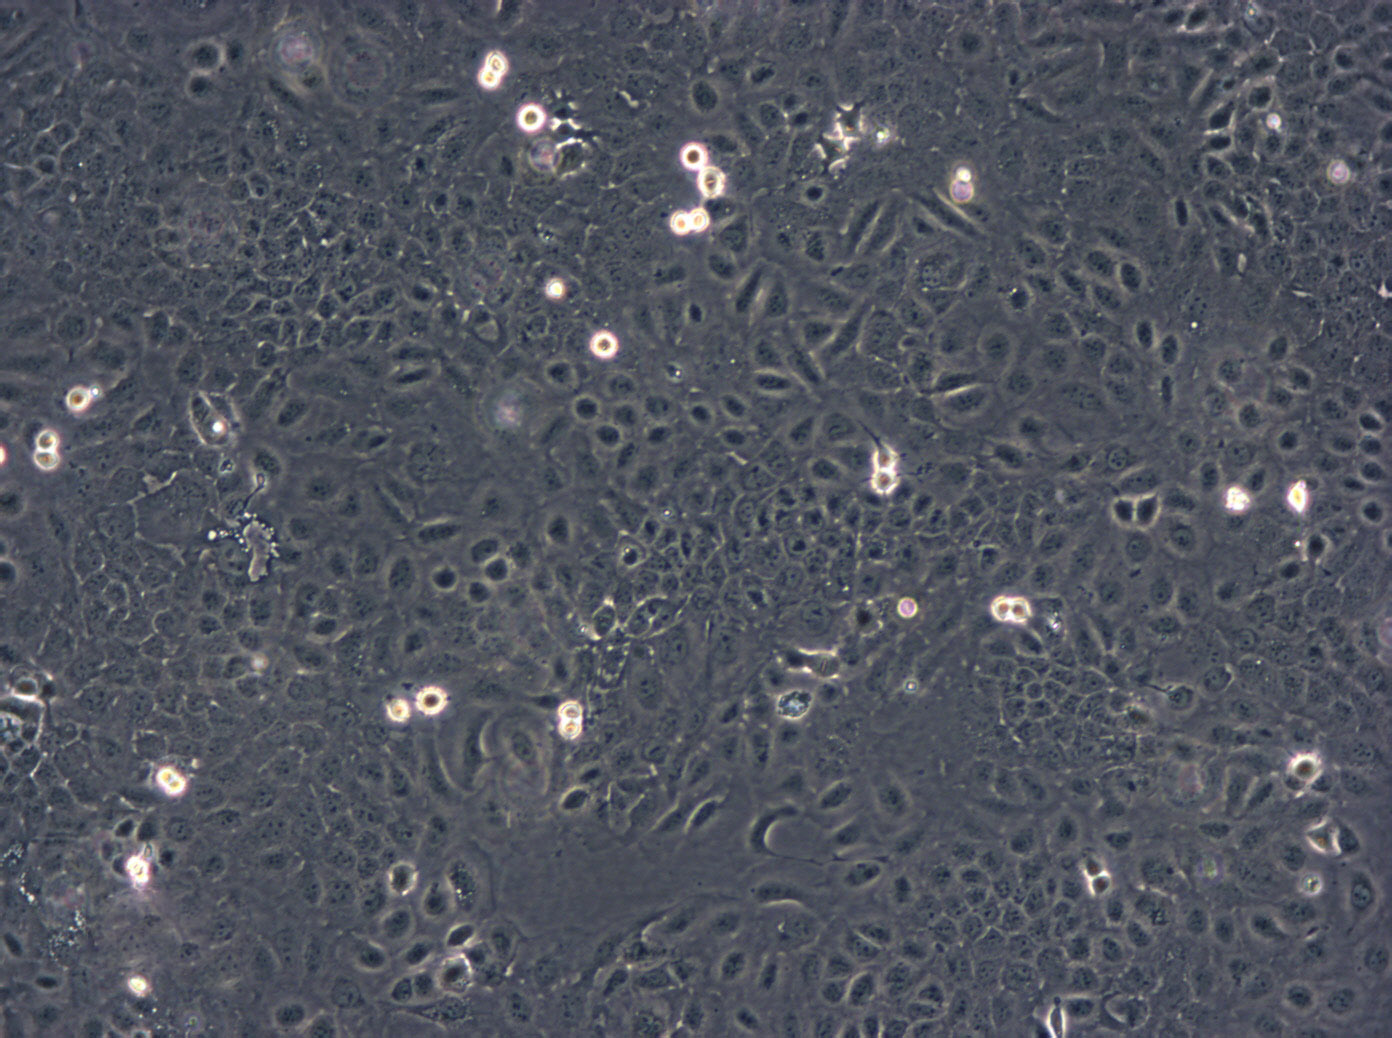 ARPE-19 Cells|人视网膜色素上皮可传代细胞系